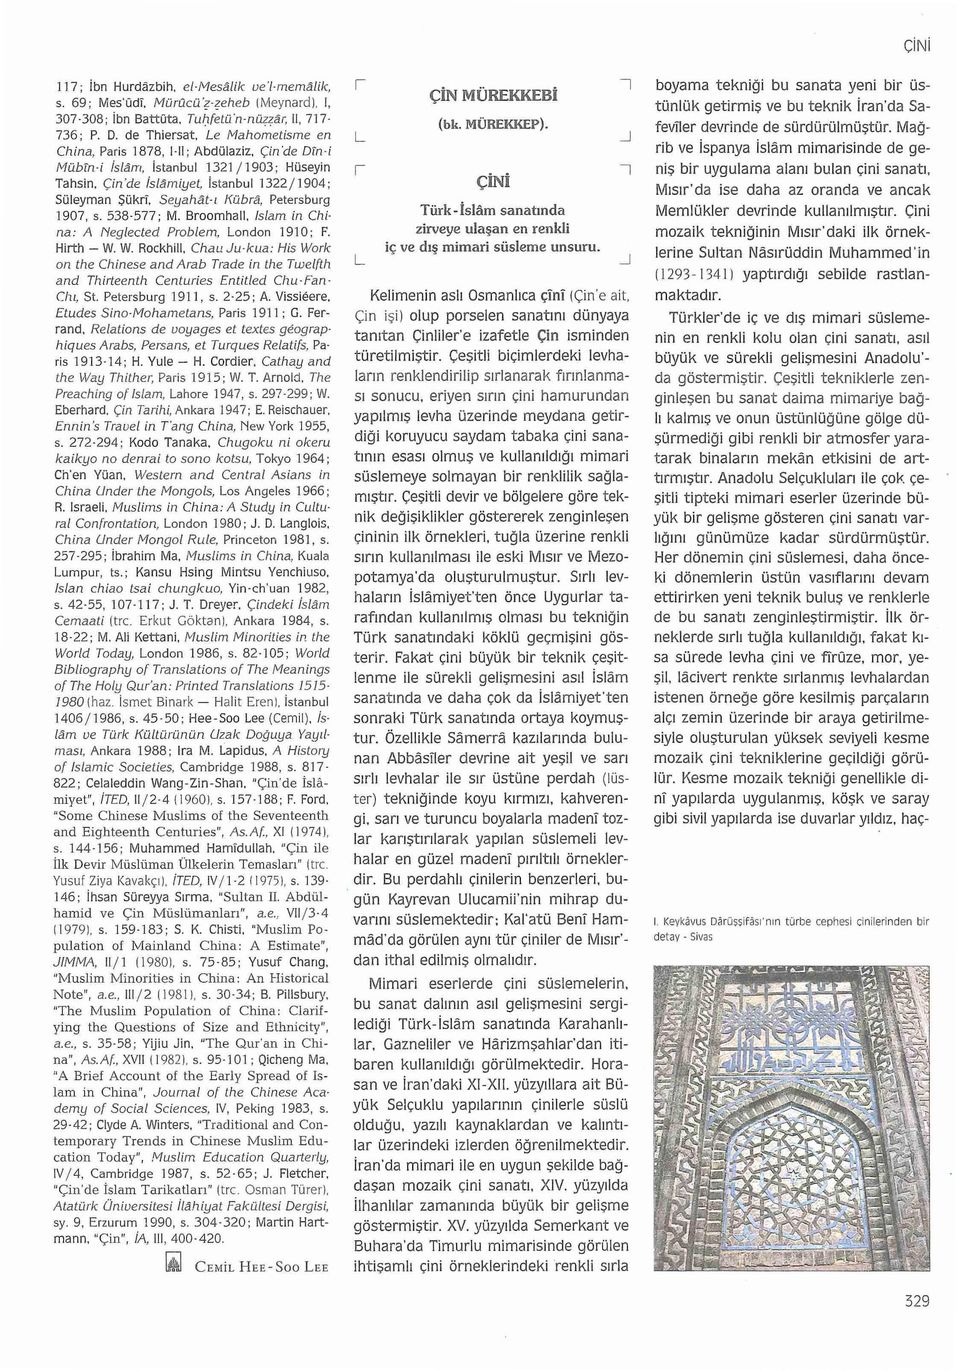 Seyahat-ı Kübra, Petersburg 1907, s. 538-577; M. Broomhall. Islam in Ch i na: A Neglected Problem, London 19ı O; F. Hirth- W.